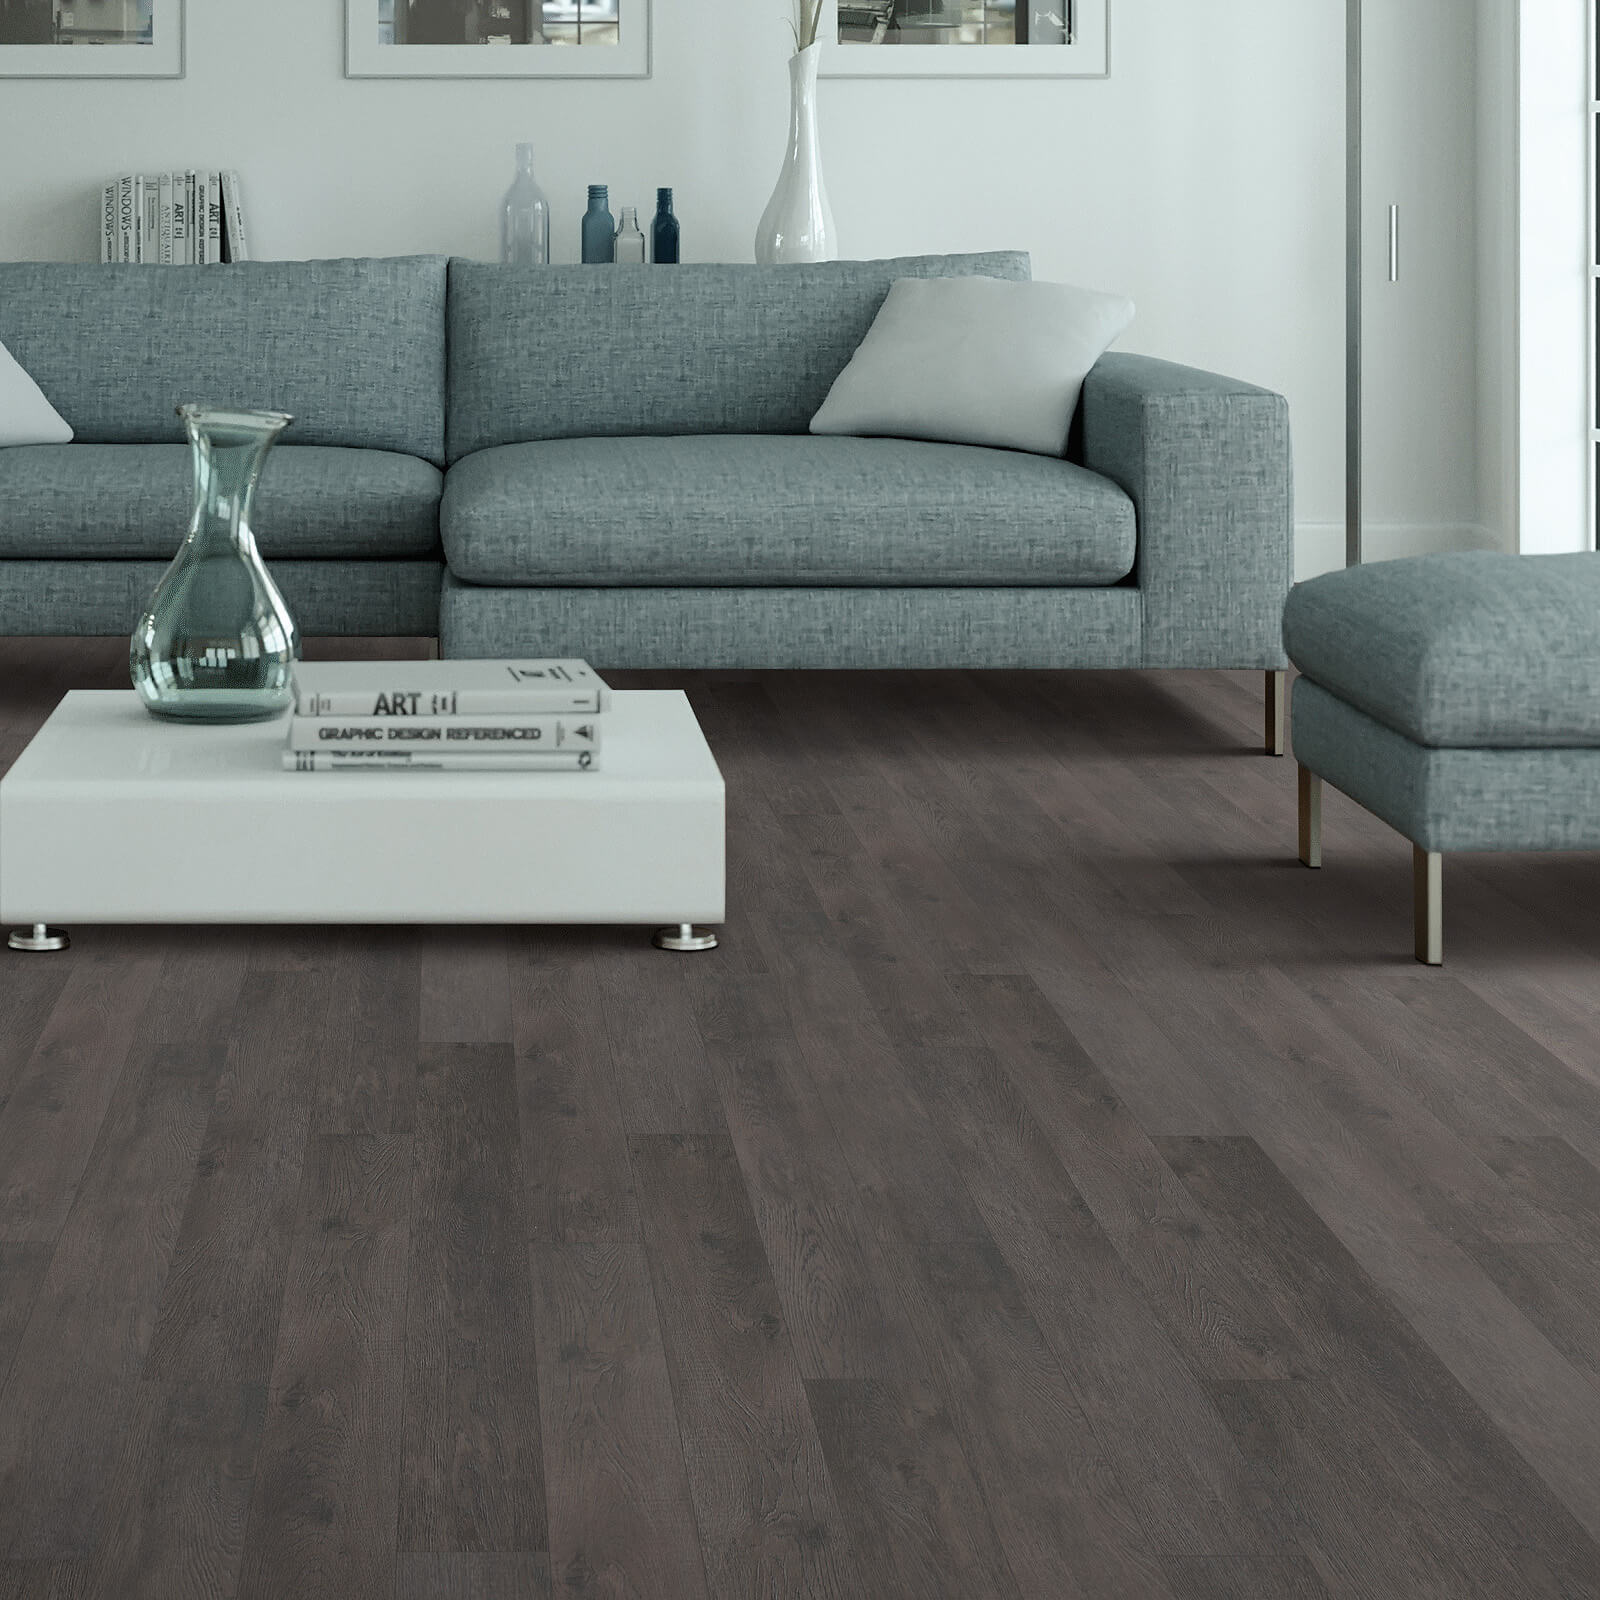 Vinyl plank flooring in living room | Dehart Tile